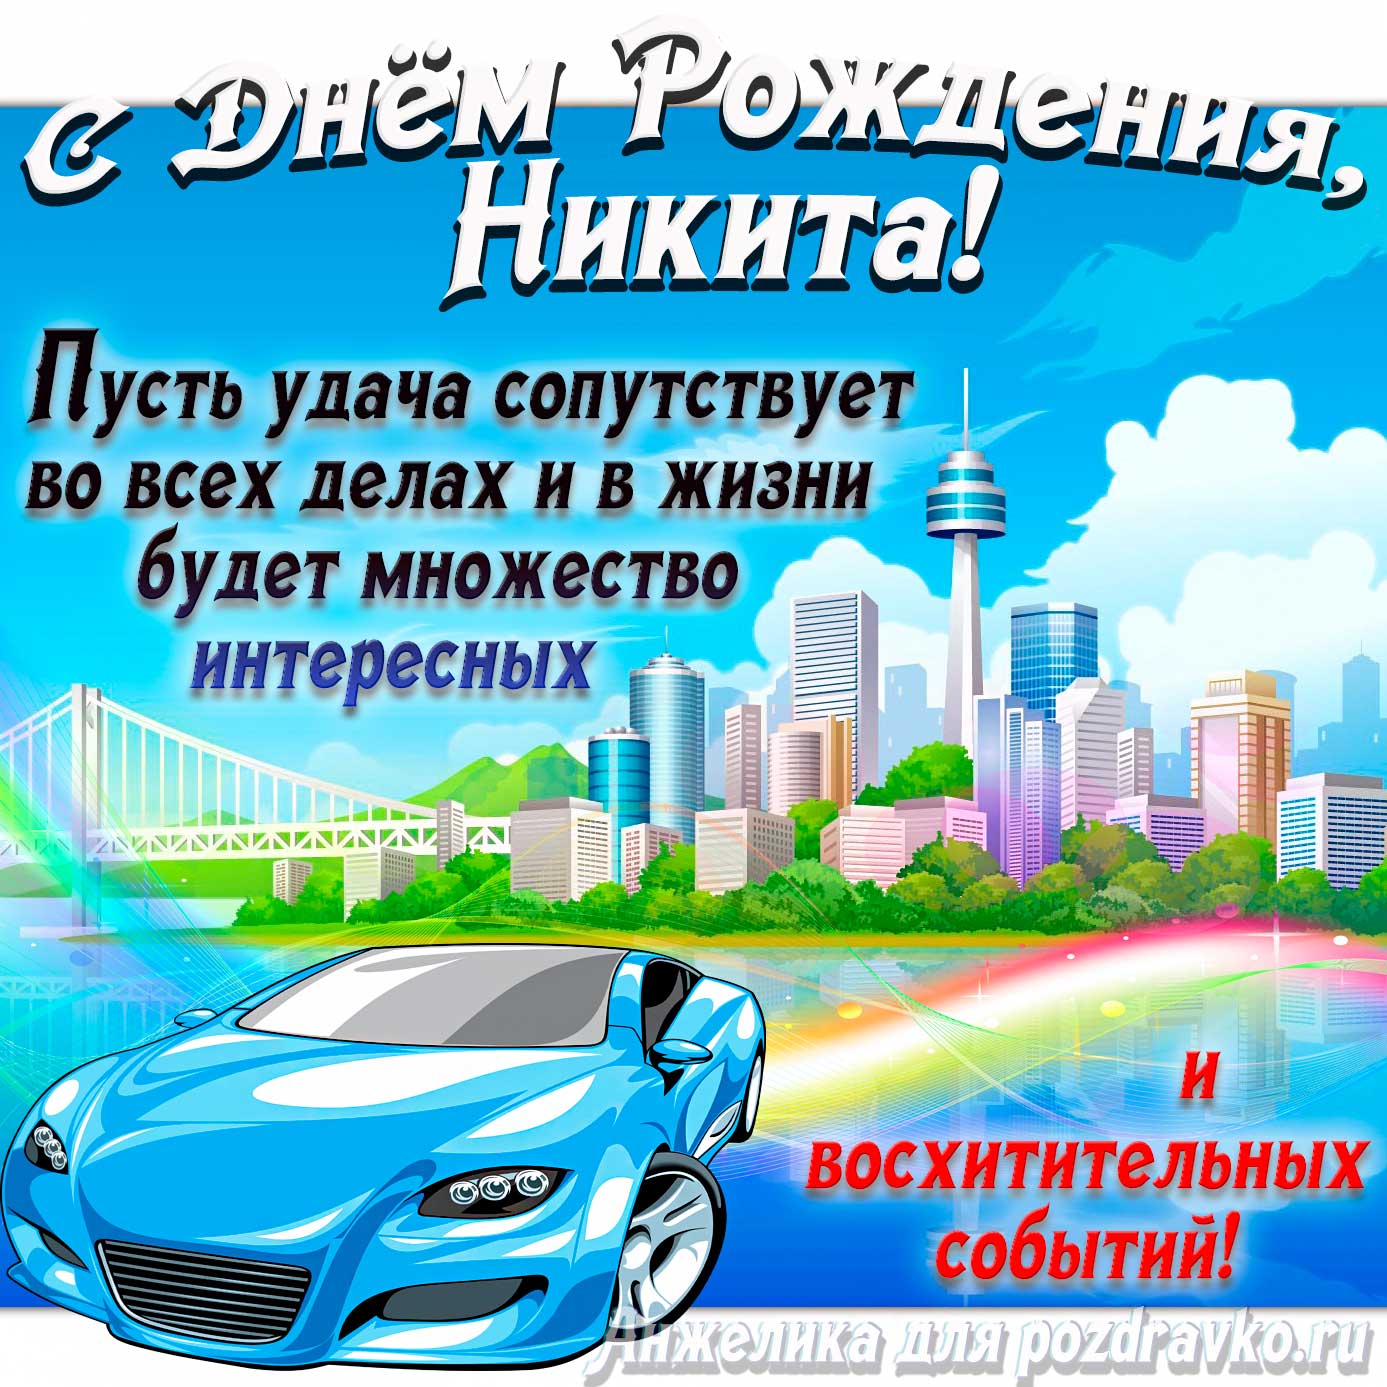 Открытка - с Днём Рождения Никита с голубой машиной и пожеланием. Скачать бесплатно или отправить картинку.